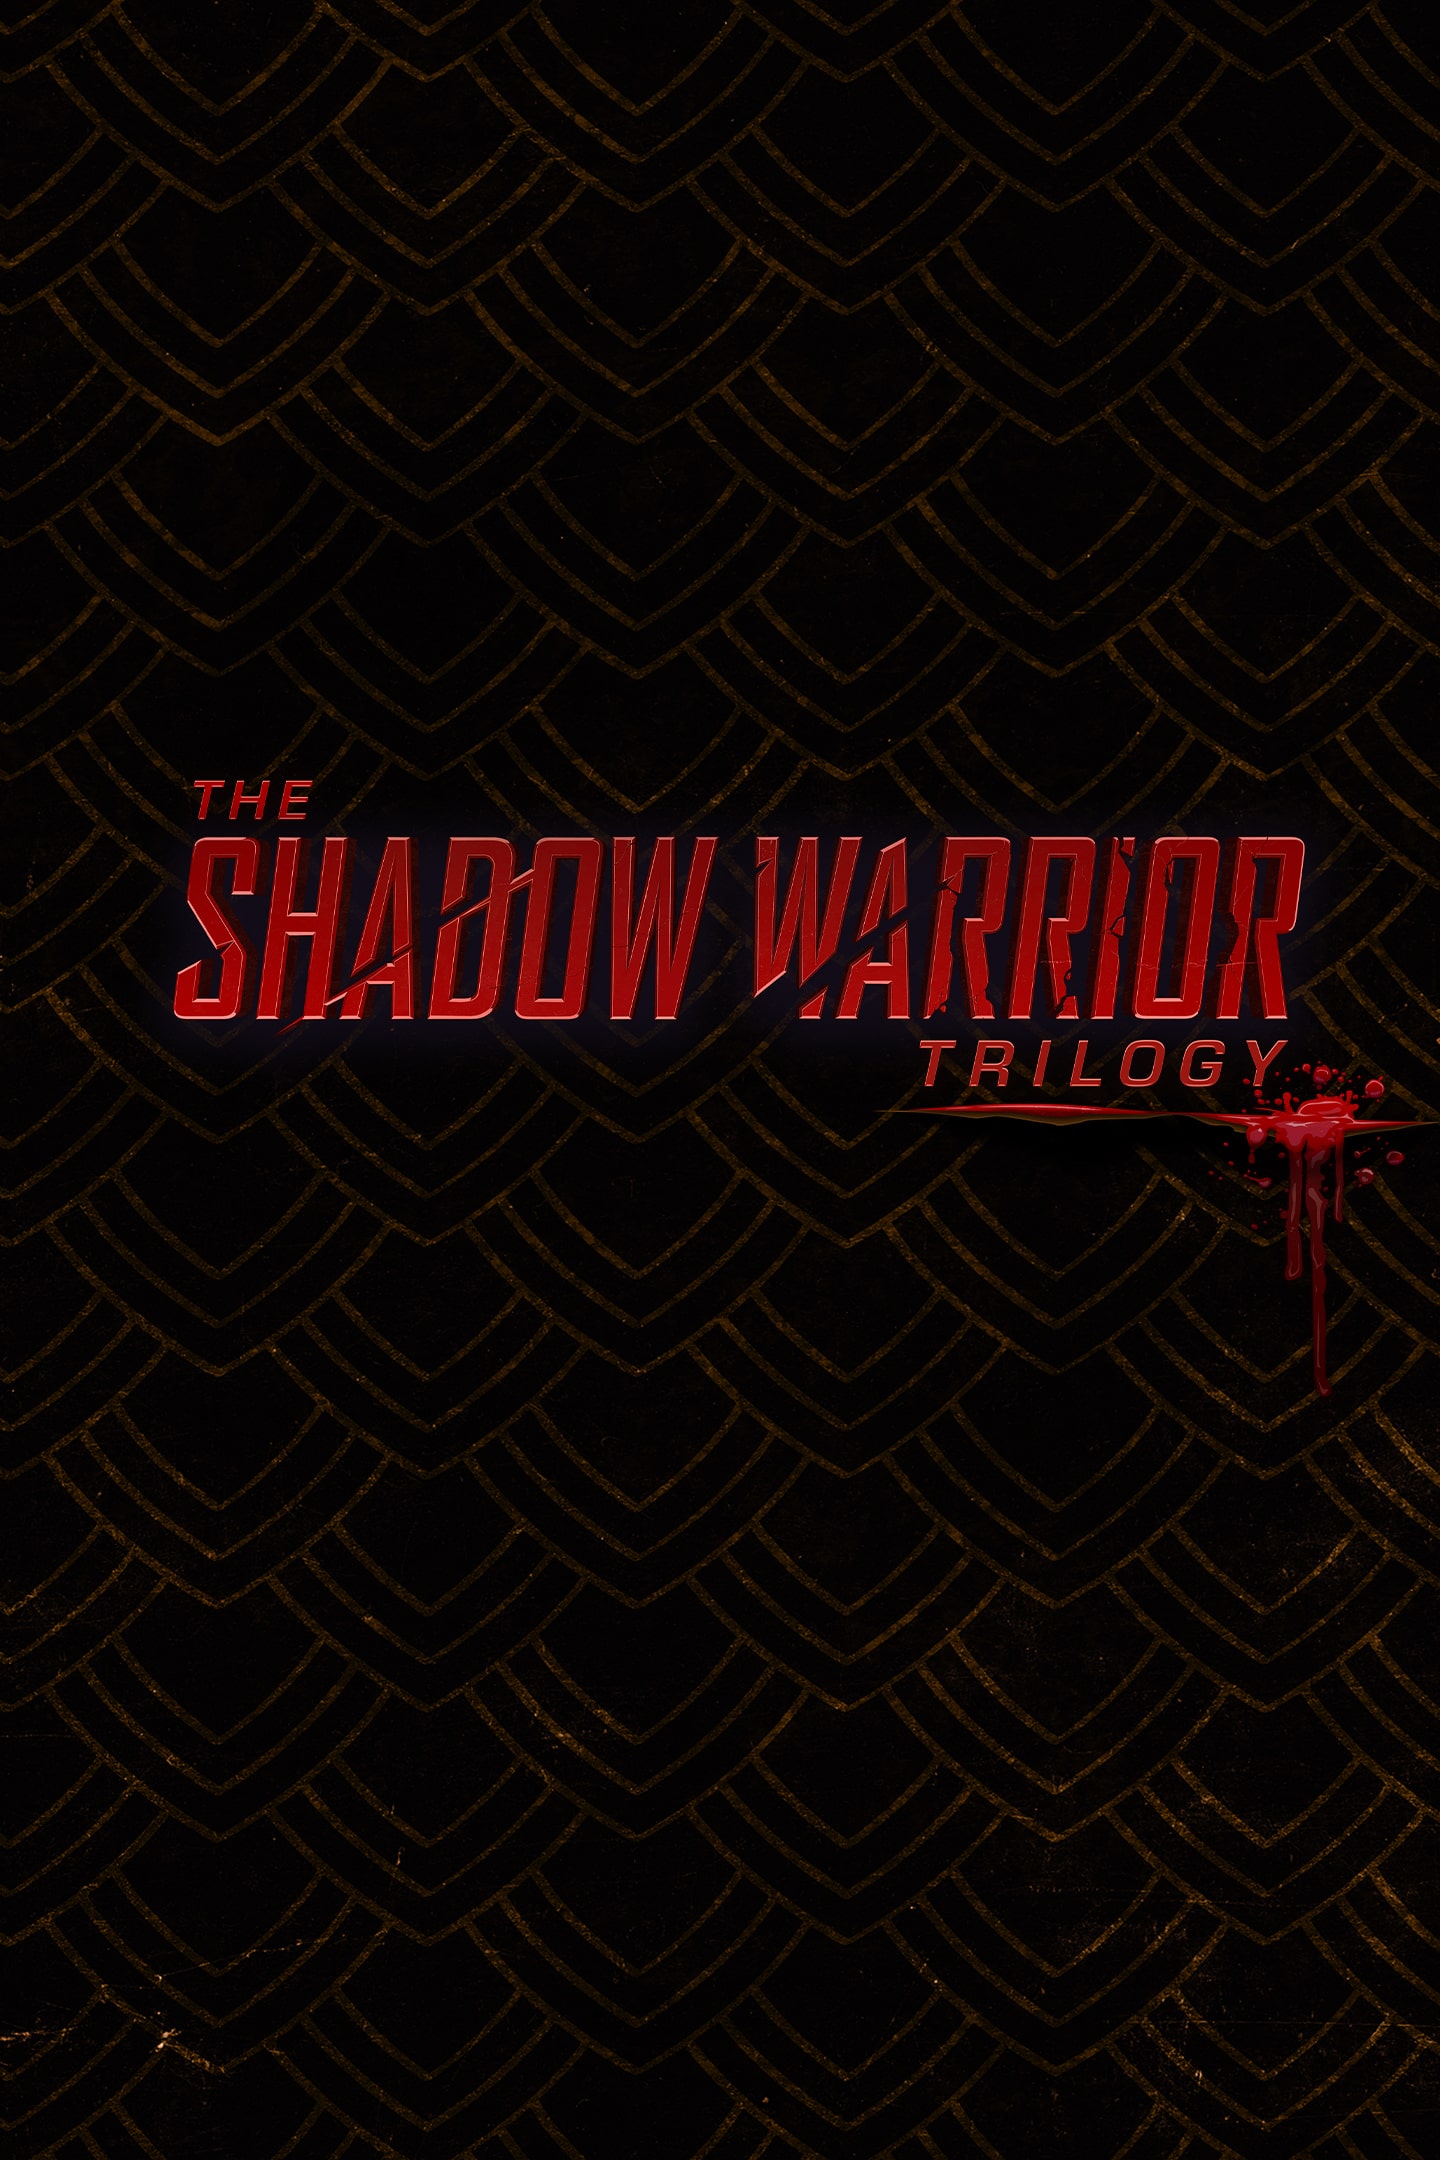 Shadow Warrior - PlayStation 4, PlayStation 4